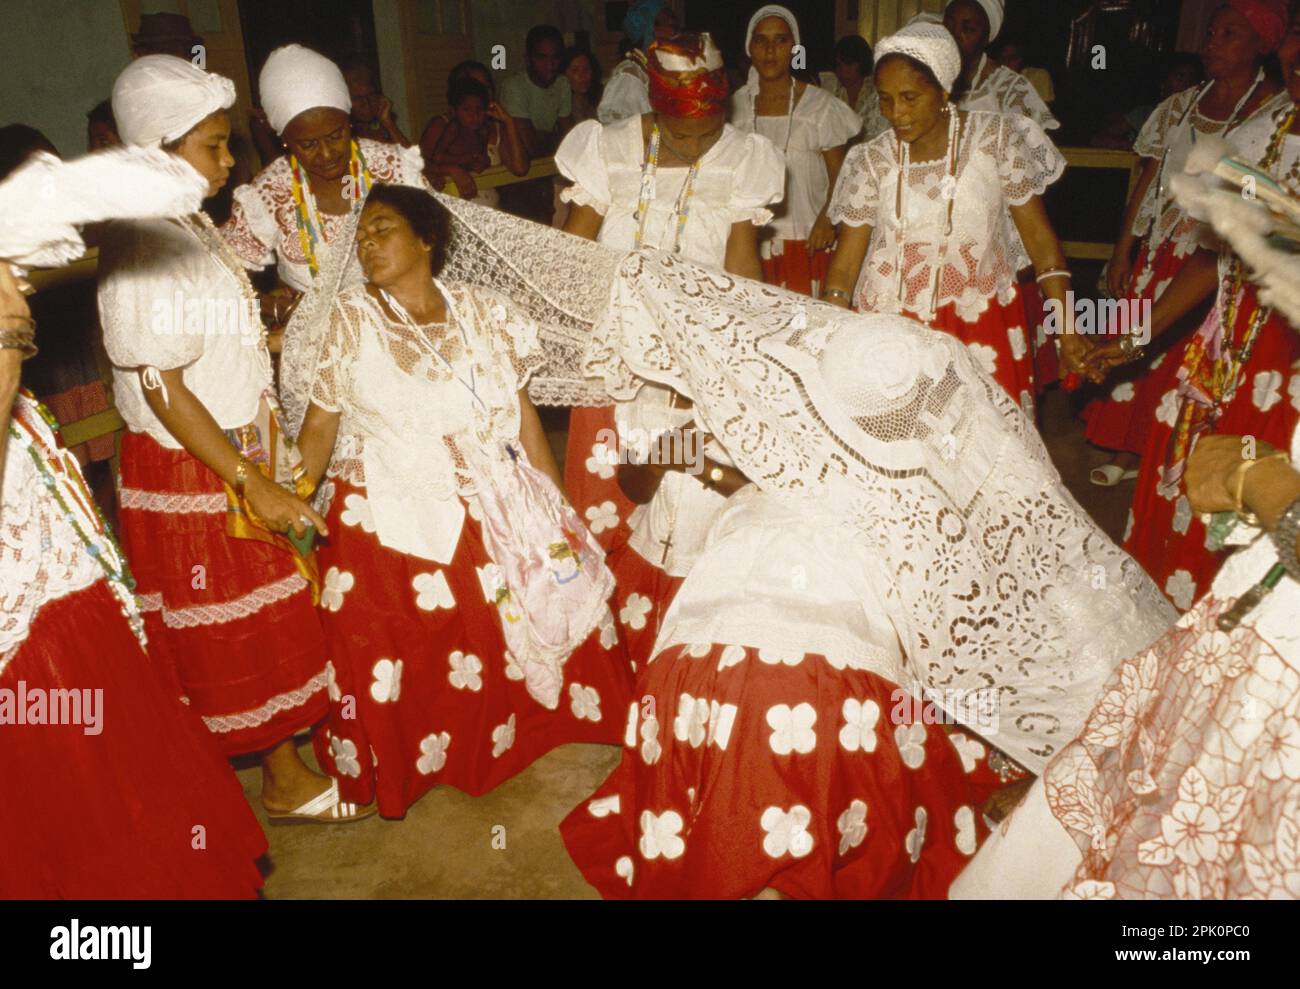 Tambor de Mina, synkretische afro-brasilianische Geistesbesessenheit Religion. Zwei Kultmitglieder (Filhas de santo) in Trance sind mit einem Ritualtuch bedeckt Stockfoto